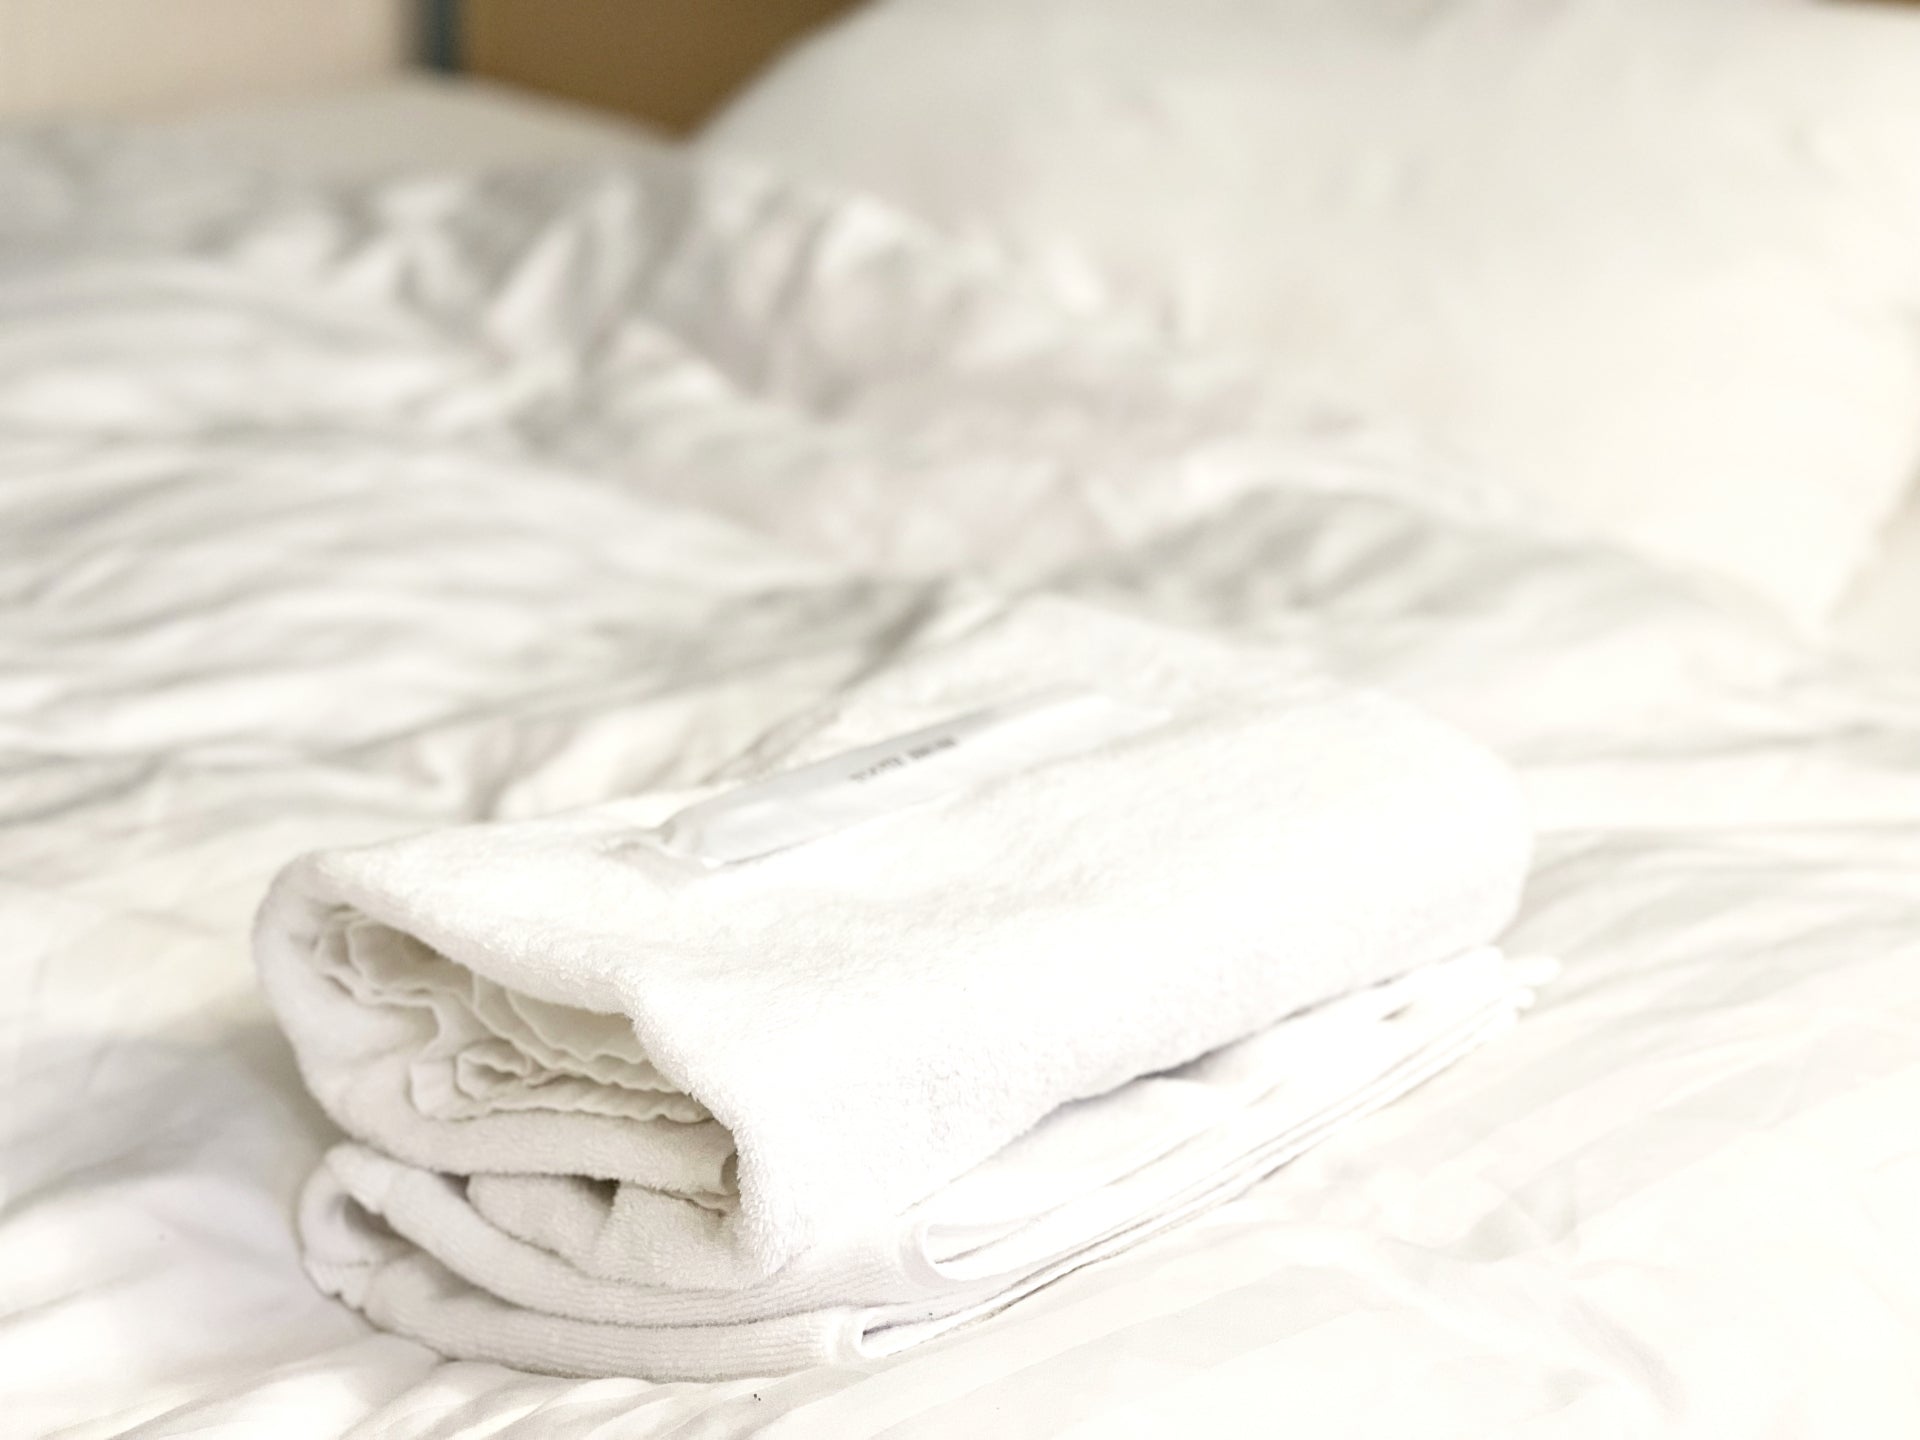 家にある物でできる「手作り枕」とは？バスタオル・マット類が睡眠の質を改善